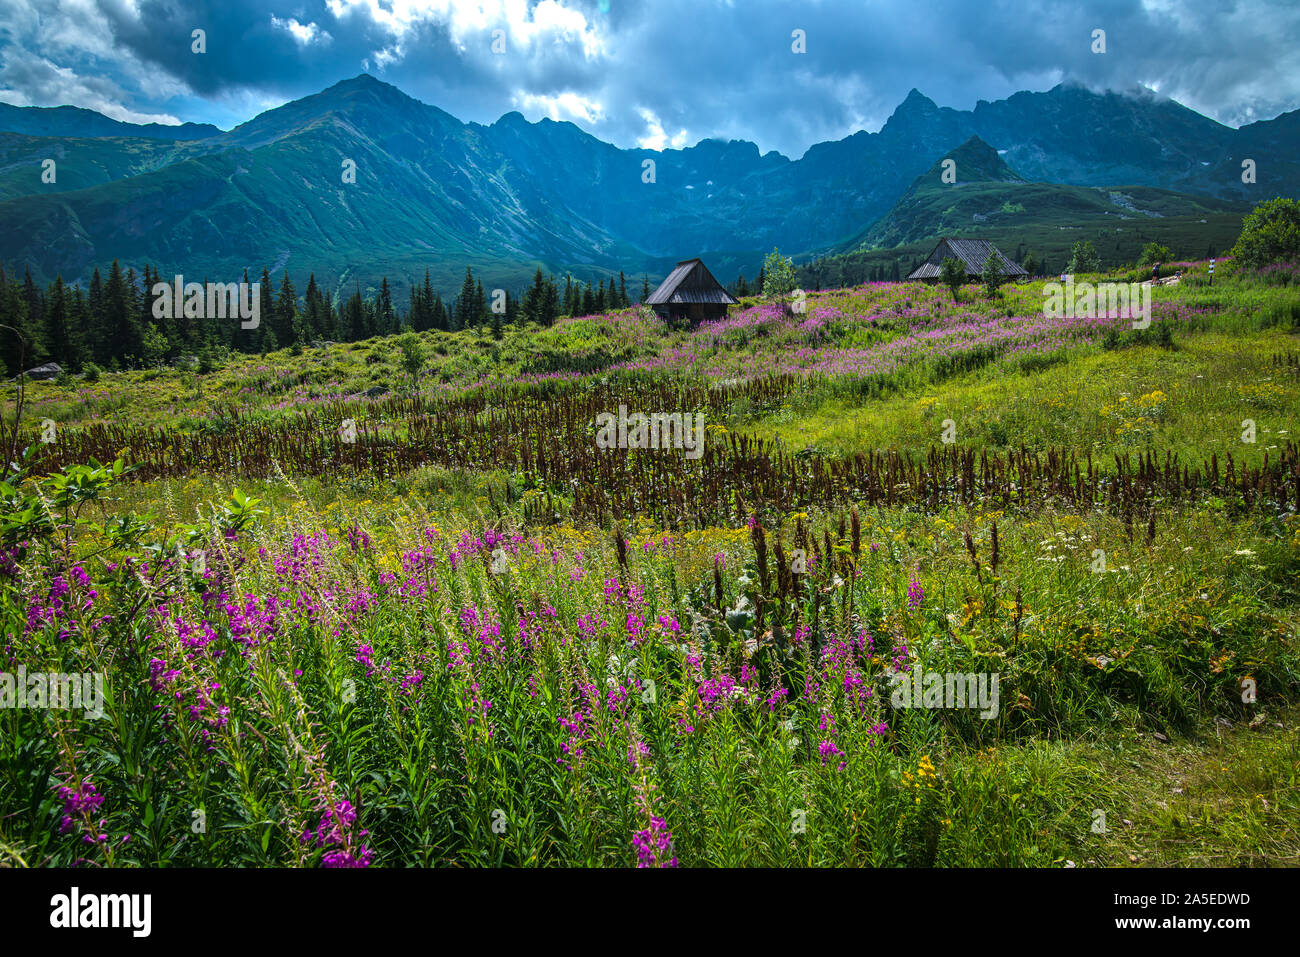 Montagnes Tatra, hala gasienicowa - Pologne Banque D'Images